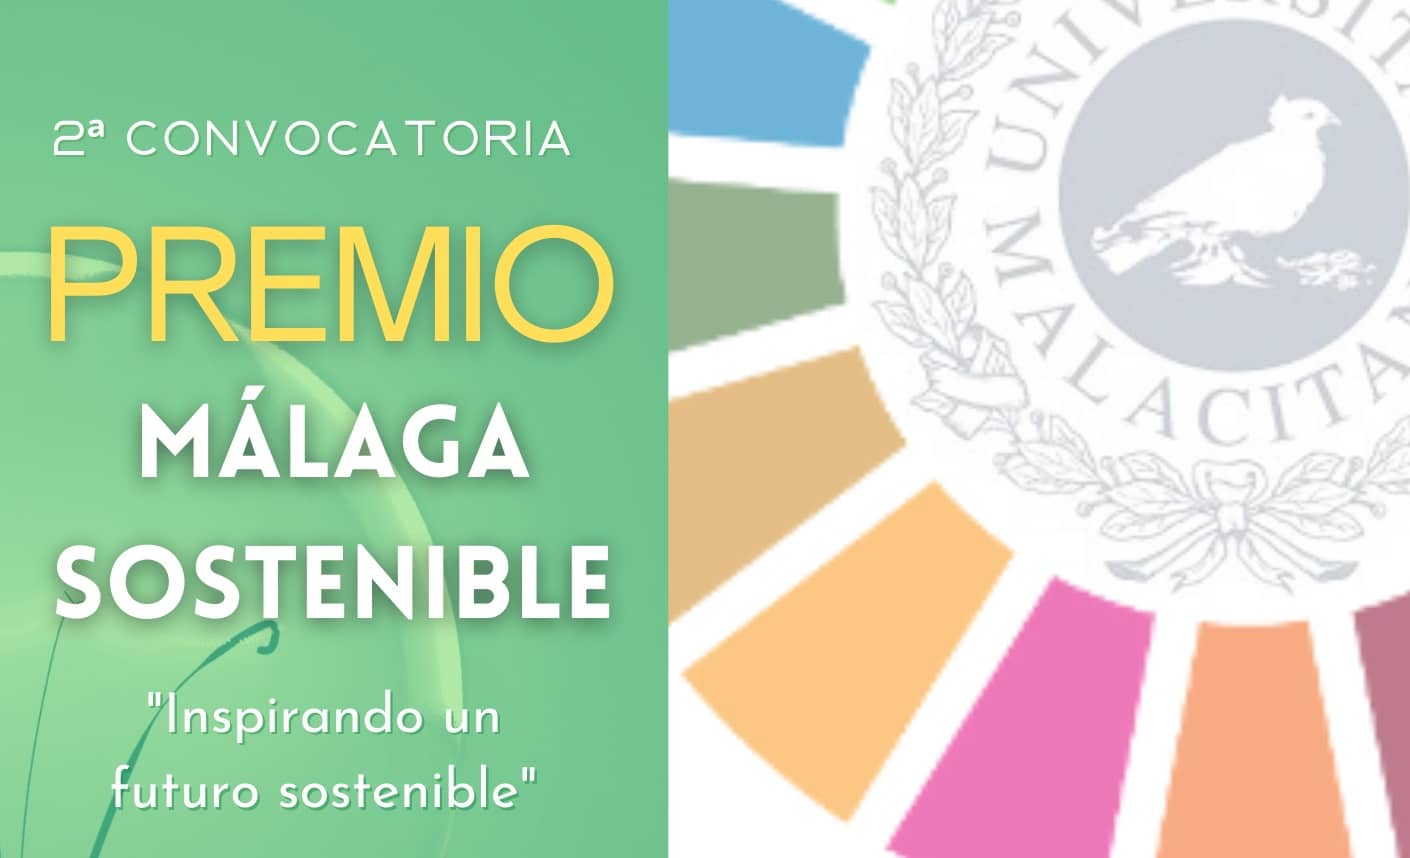 La universidad de Málaga, Flacema y Votorantim Cimentos convocan una nueva edición del “Premio Málaga Sostenible”